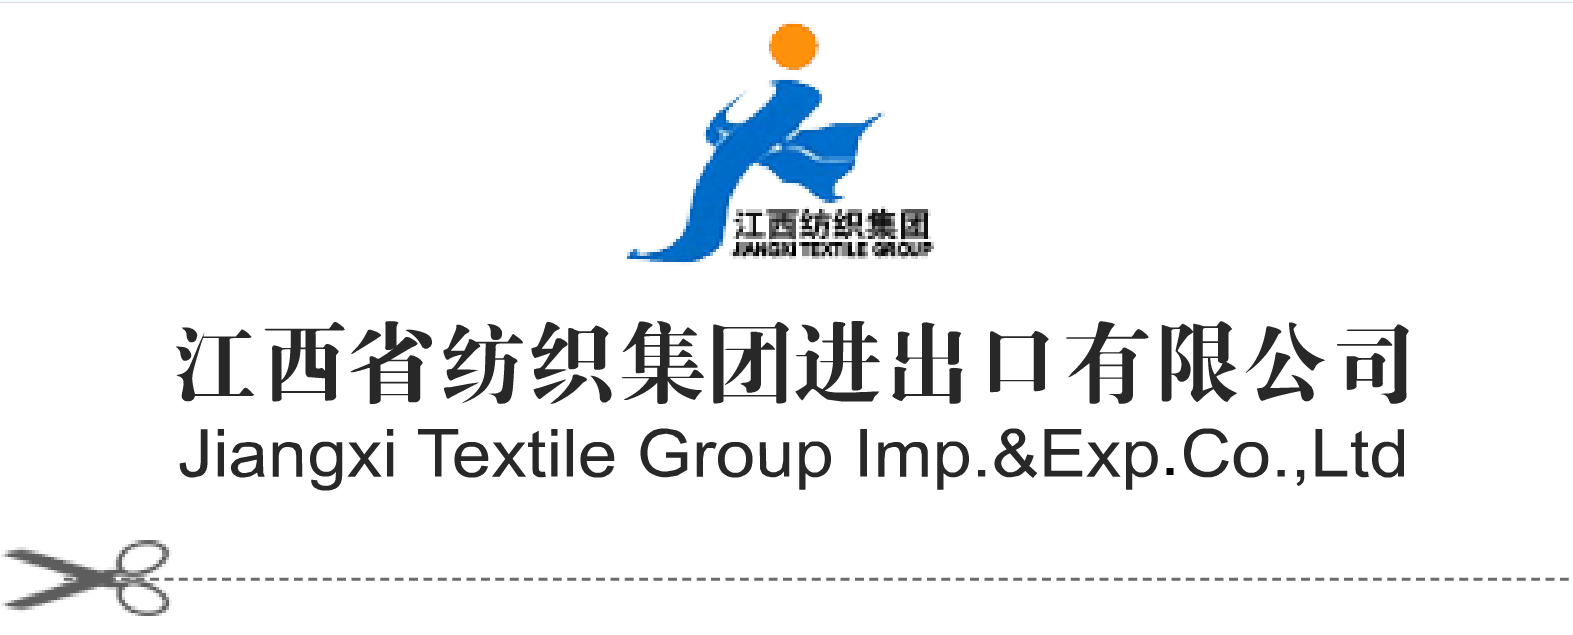 江西省纺织集团进出口有限公司